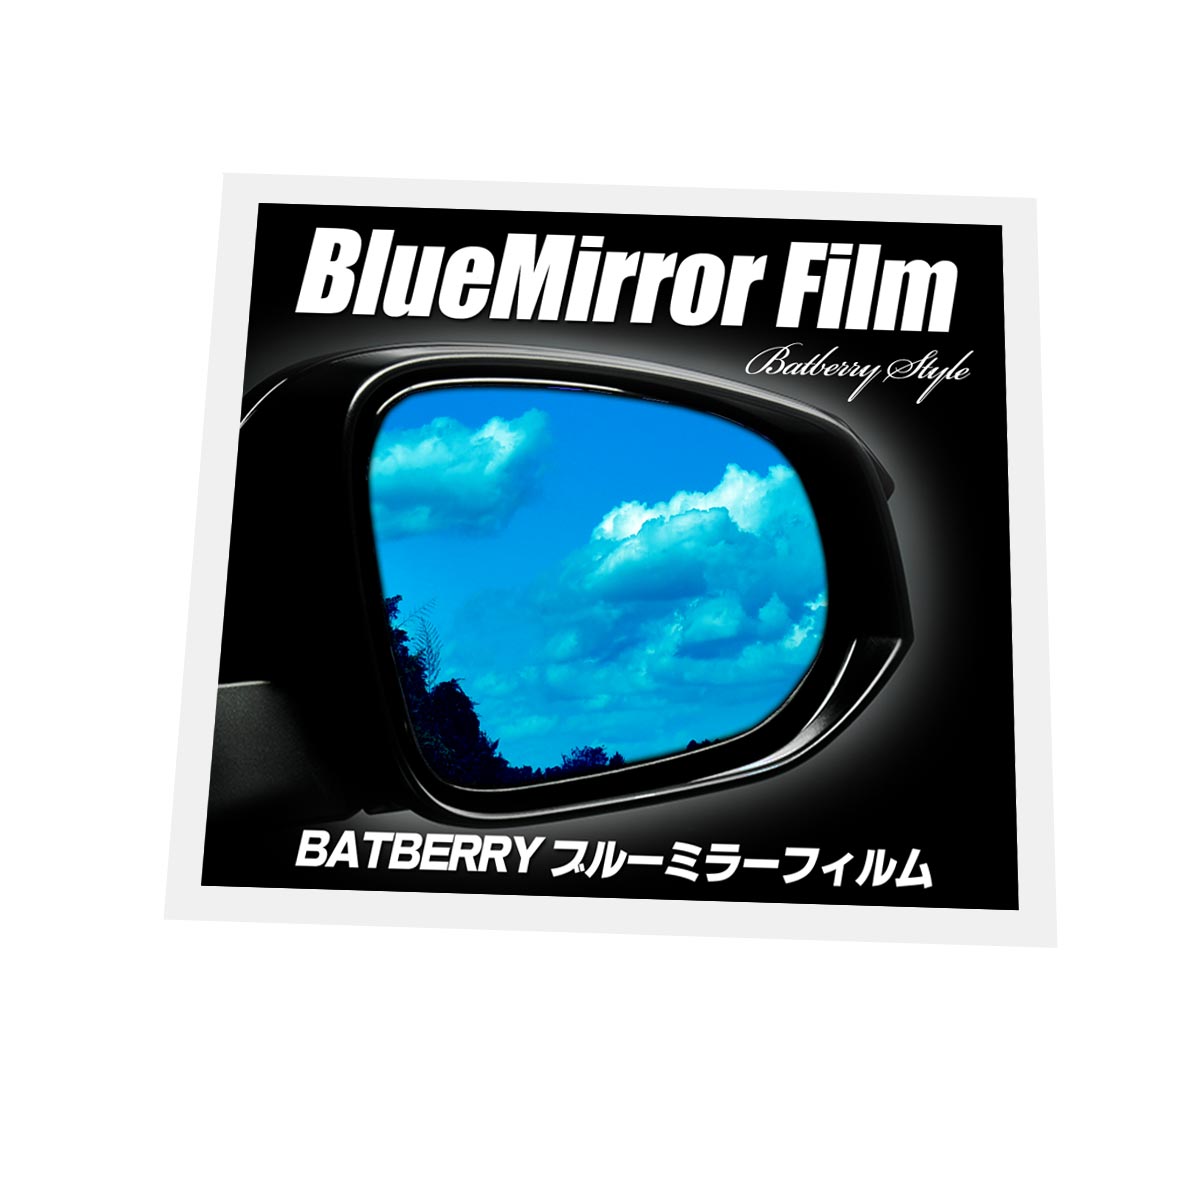 BATBERRY ブルーミラーフィルム スバル レガシィアウトバック BS9 G型用(R2年10月〜R3年8月まで) 左右セット